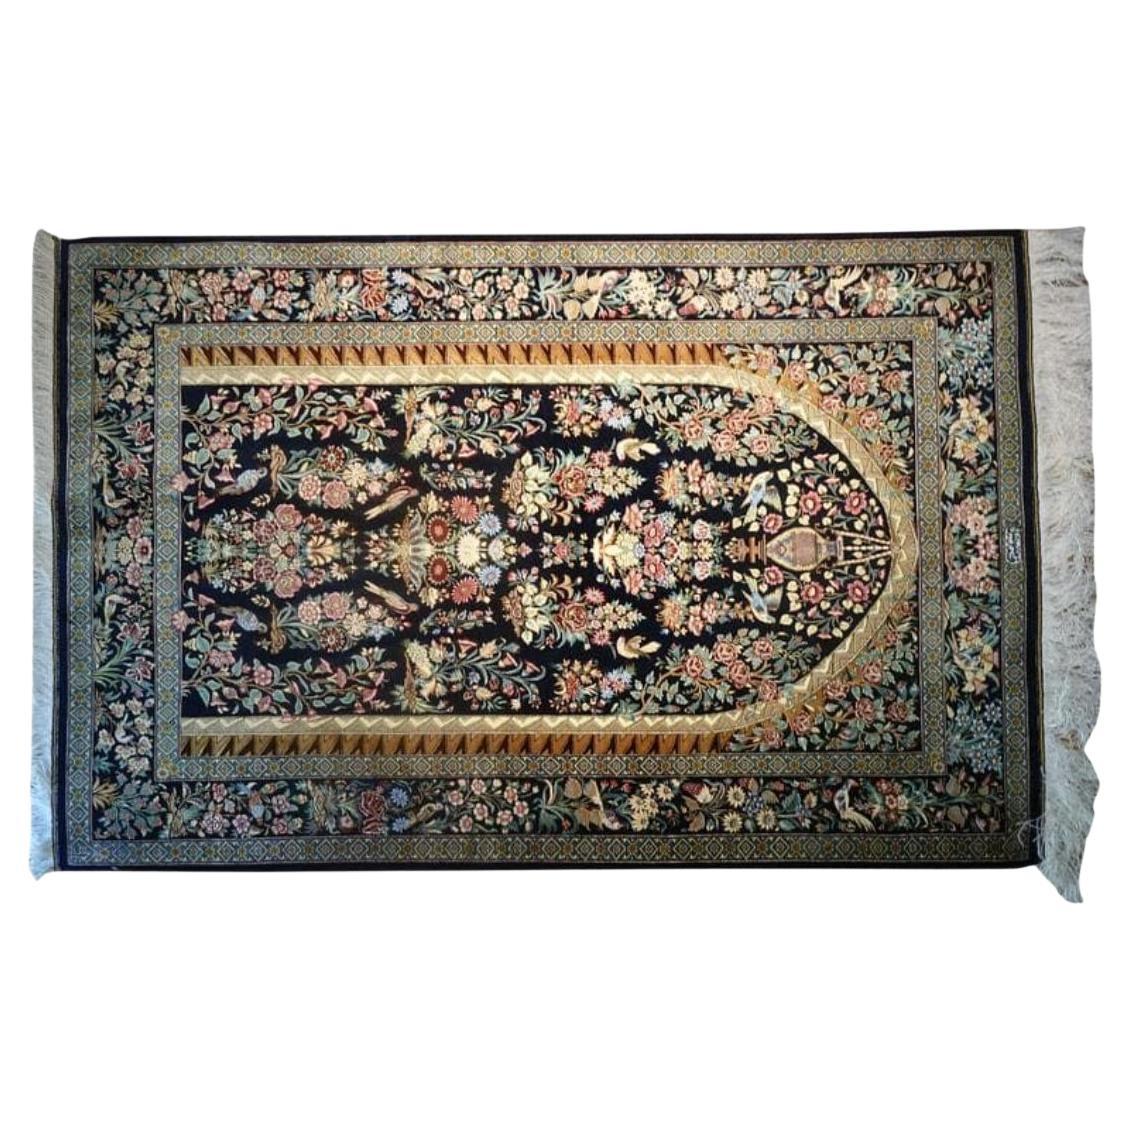 Very Fine Multicolor Persian Silk Qum - 5' 3.3' For Sale